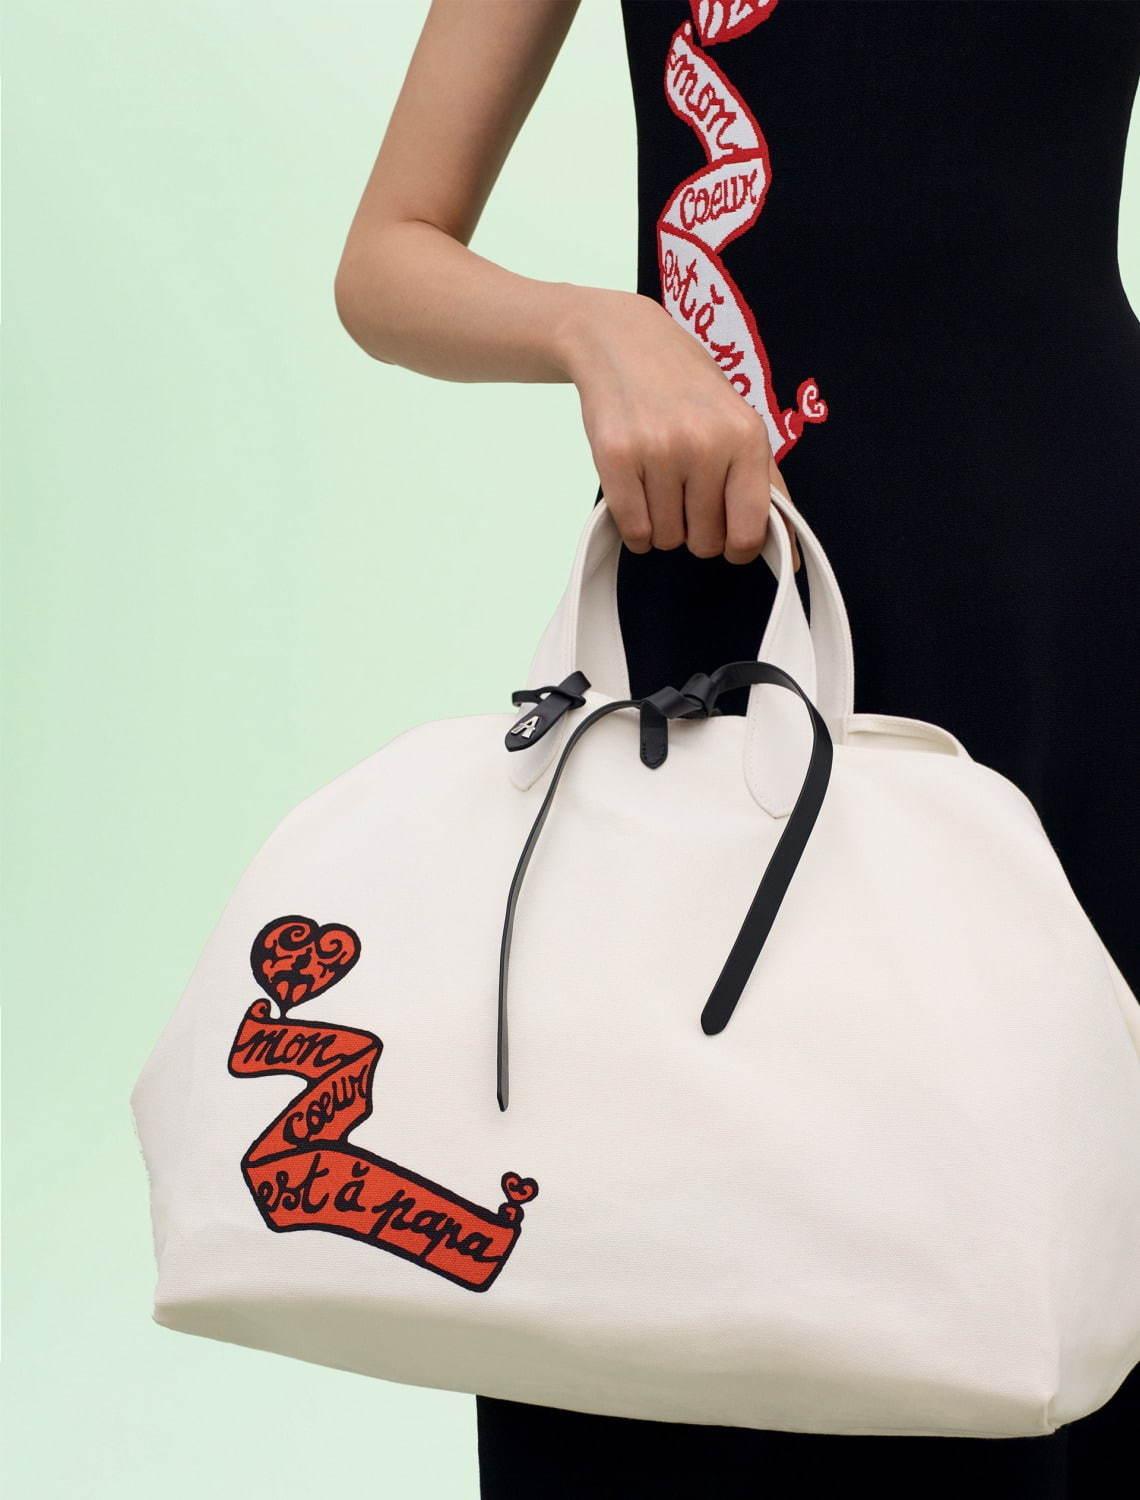 “伝説のクチュリエ”アライア「モン クール エ ア パパ(私の心はパパのもの)」ロゴのドレスやバッグ コピー